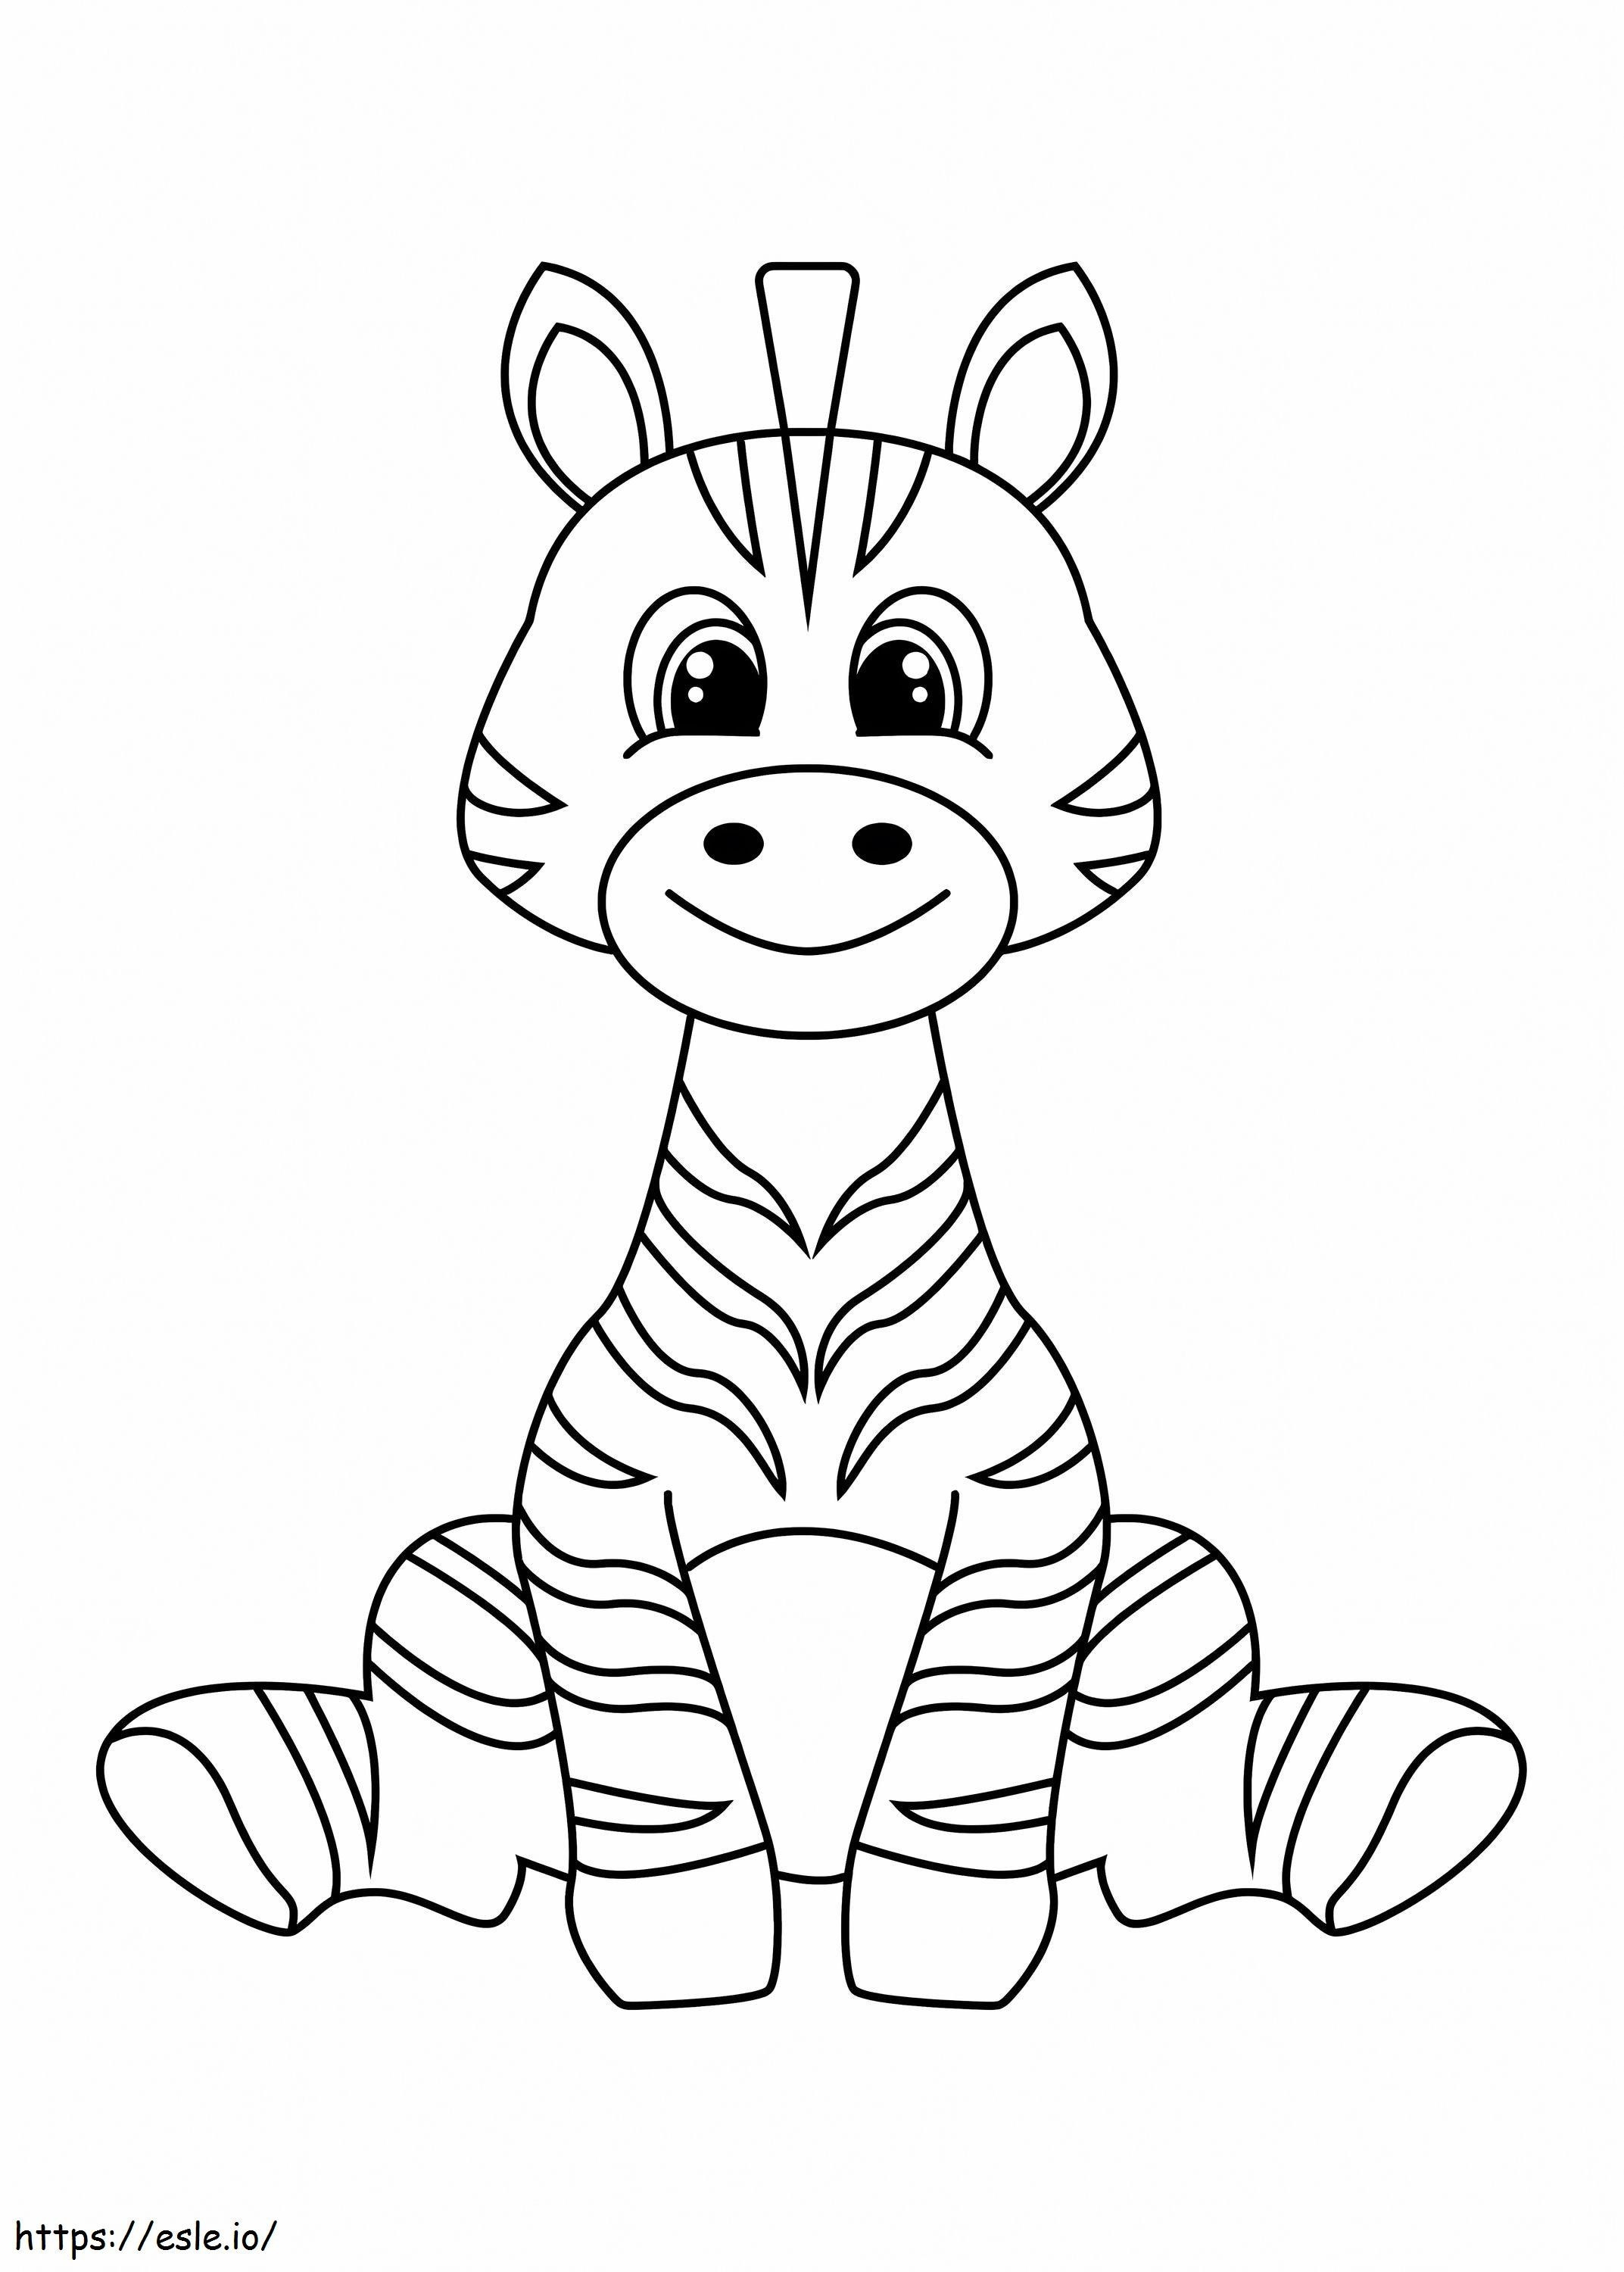 Lächelndes Zebra sitzend ausmalbilder